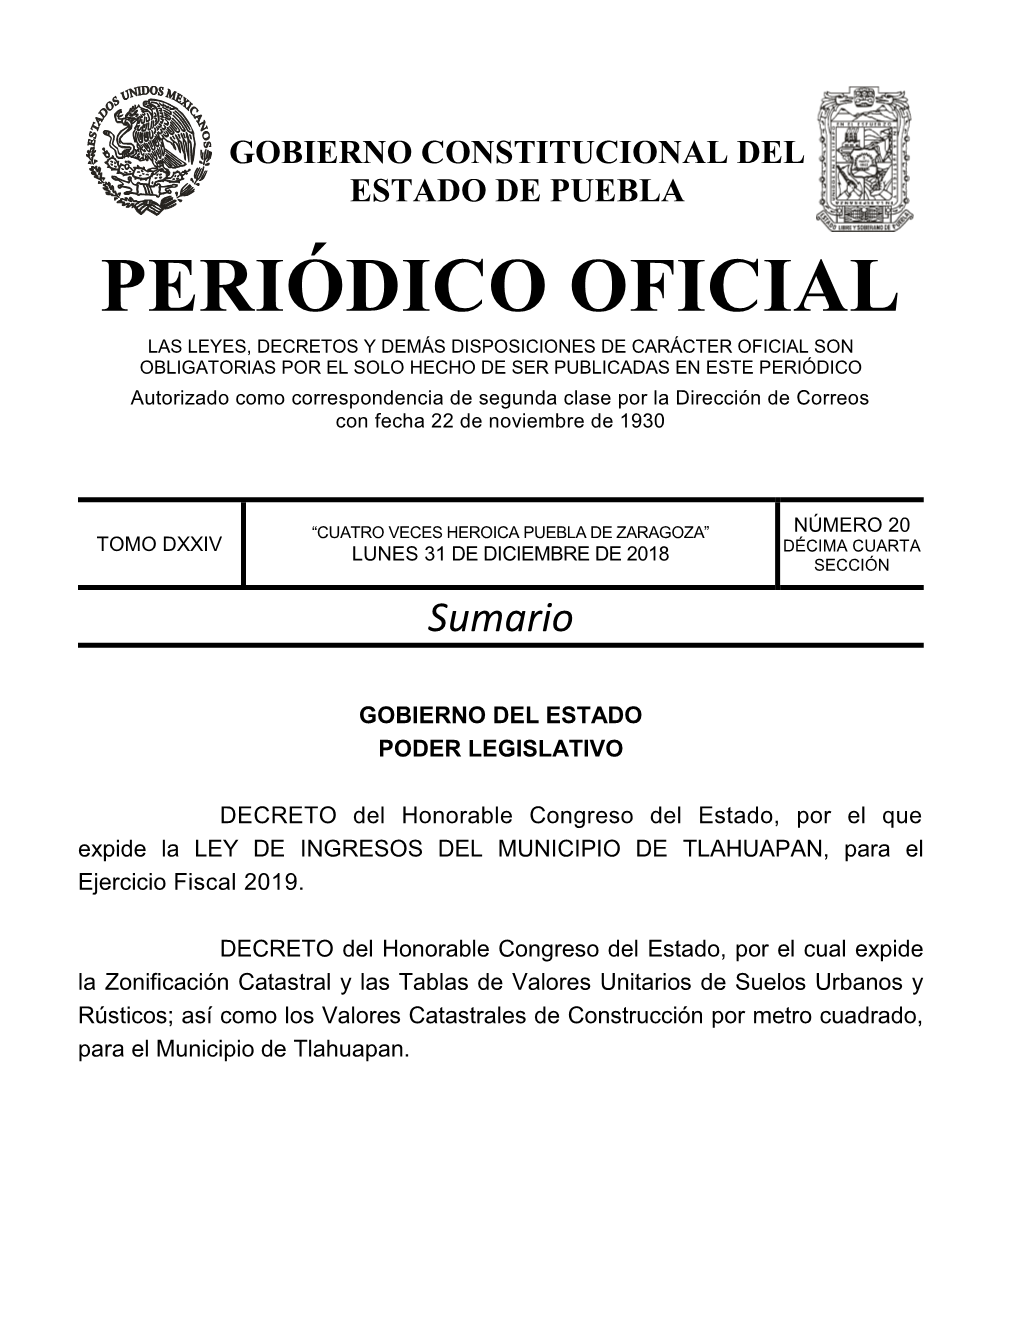 LEY DE INGRESOS DEL MUNICIPIO DE TLAHUAPAN, Para El Ejercicio Fiscal 2019